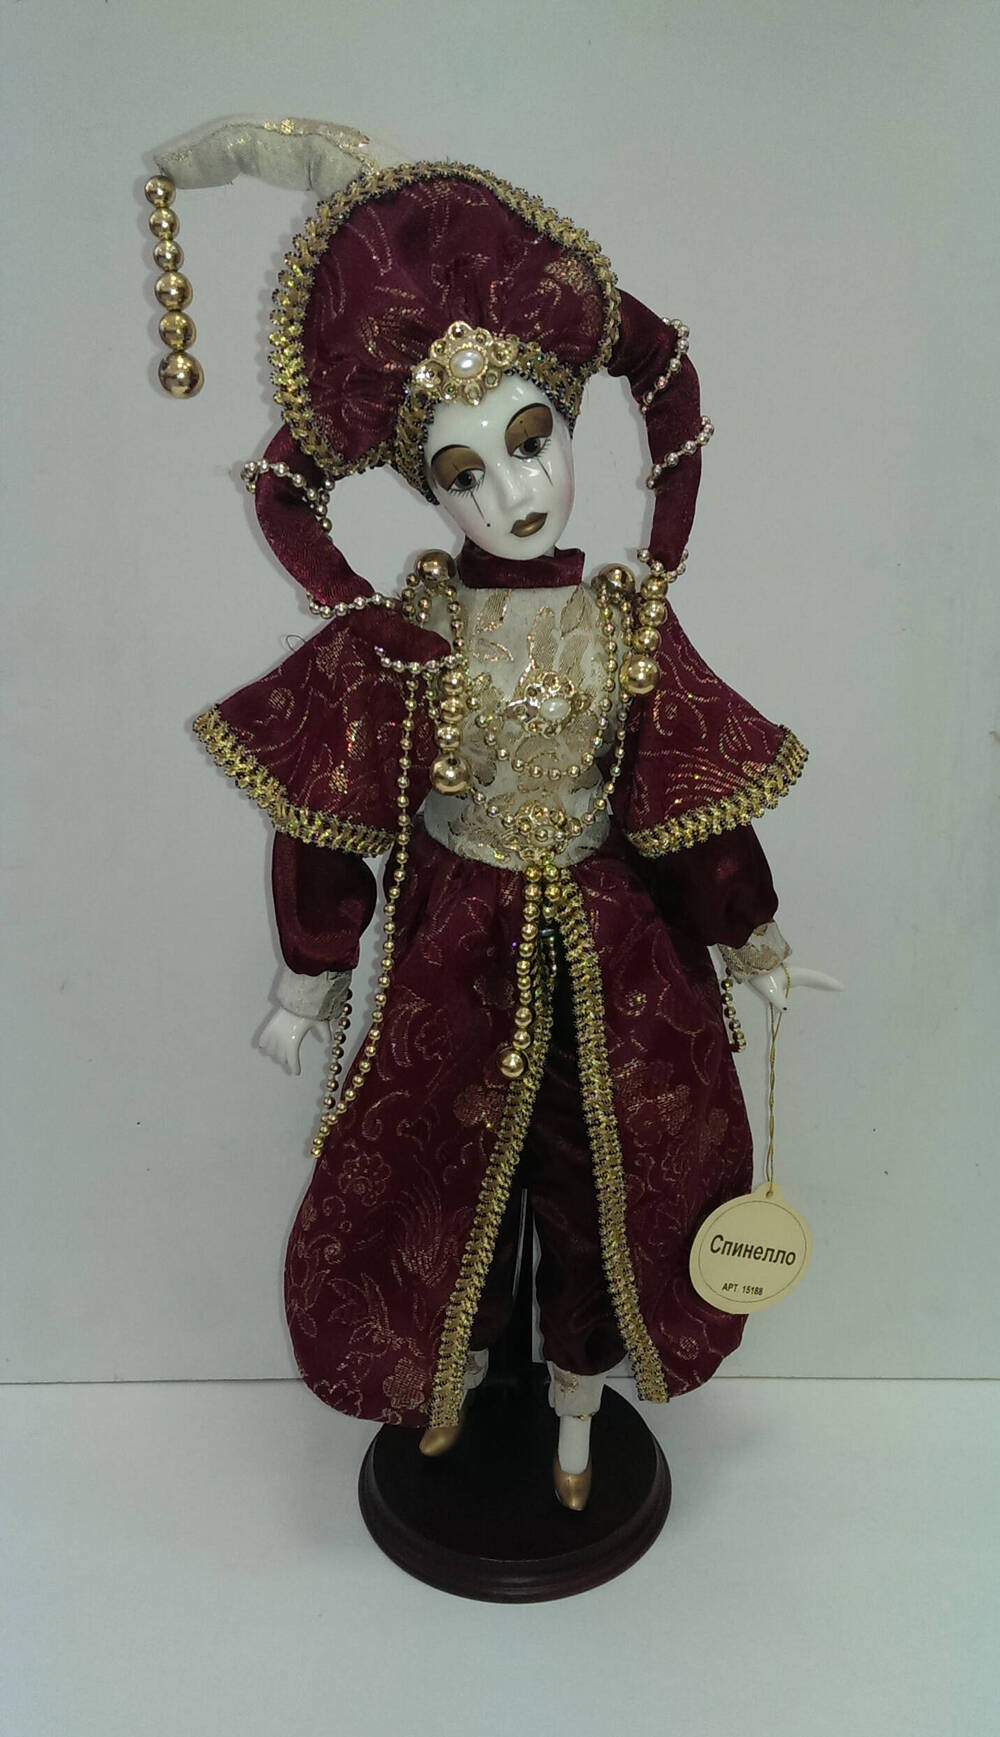 Спинелло. Кукла из Коллекции кукол ручной работы с фарфоровыми элементами «Арлекин» компании «Ремеко», Великобритания (Remeco HARLEQUIN Collection).